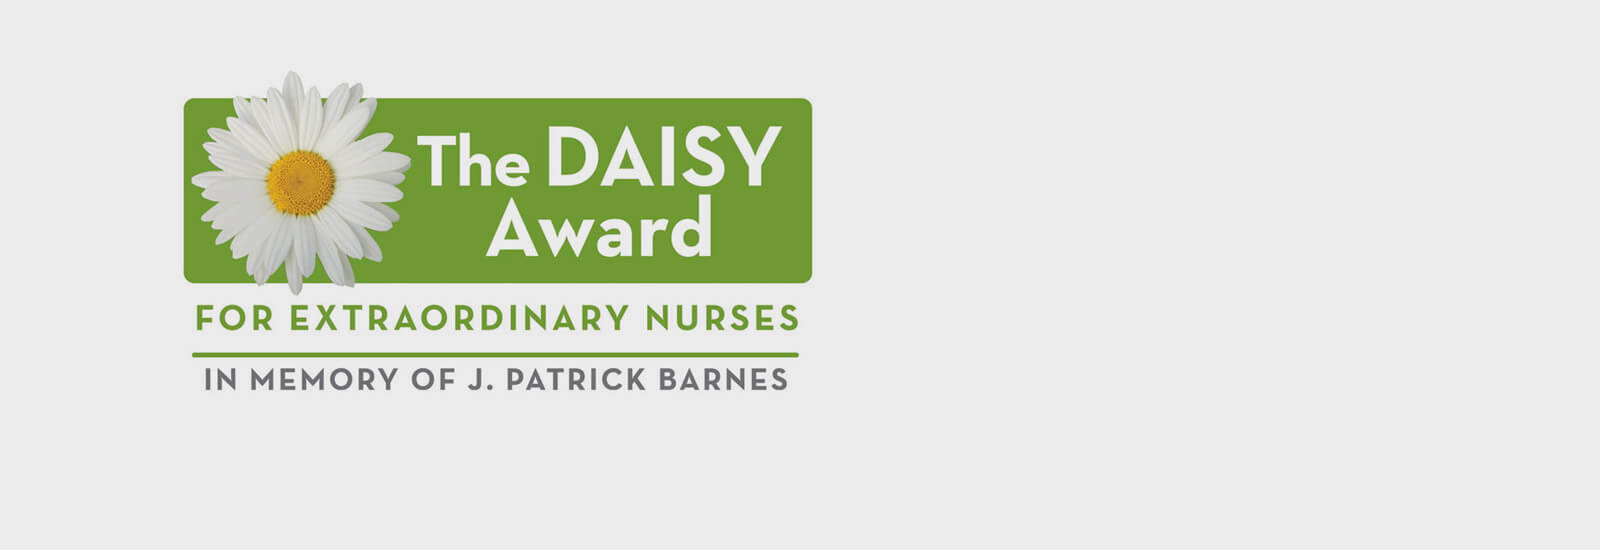 The Daisy Award